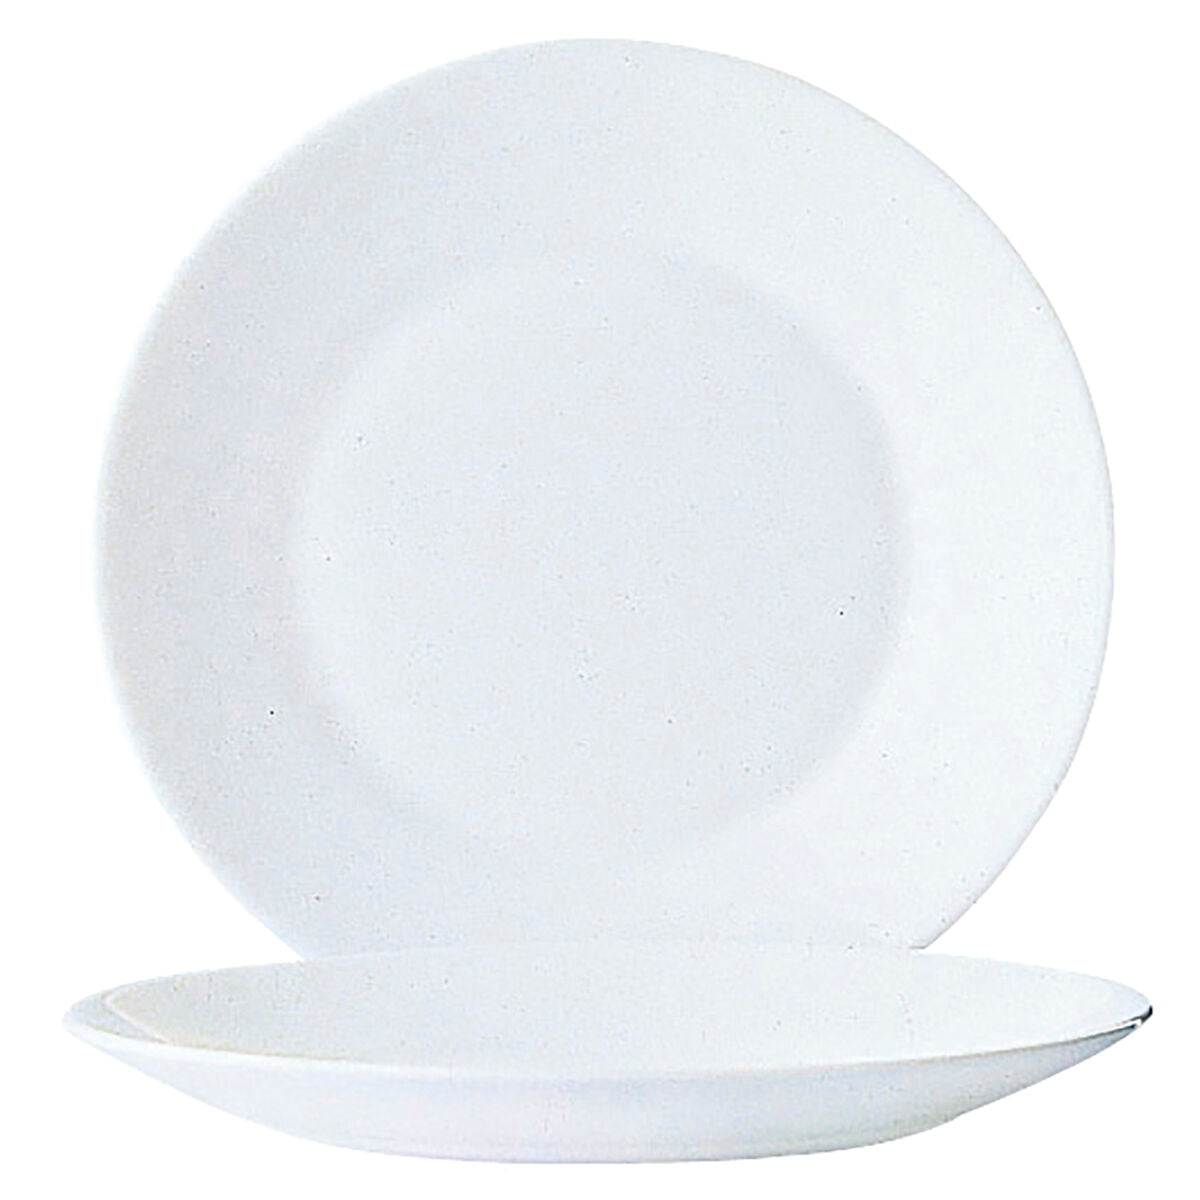 Arcoroc Weißes Glas Brot Geschirr-Set - Stilvoll servieren!-Arcoroc-0026102511275-Ciniskitchen